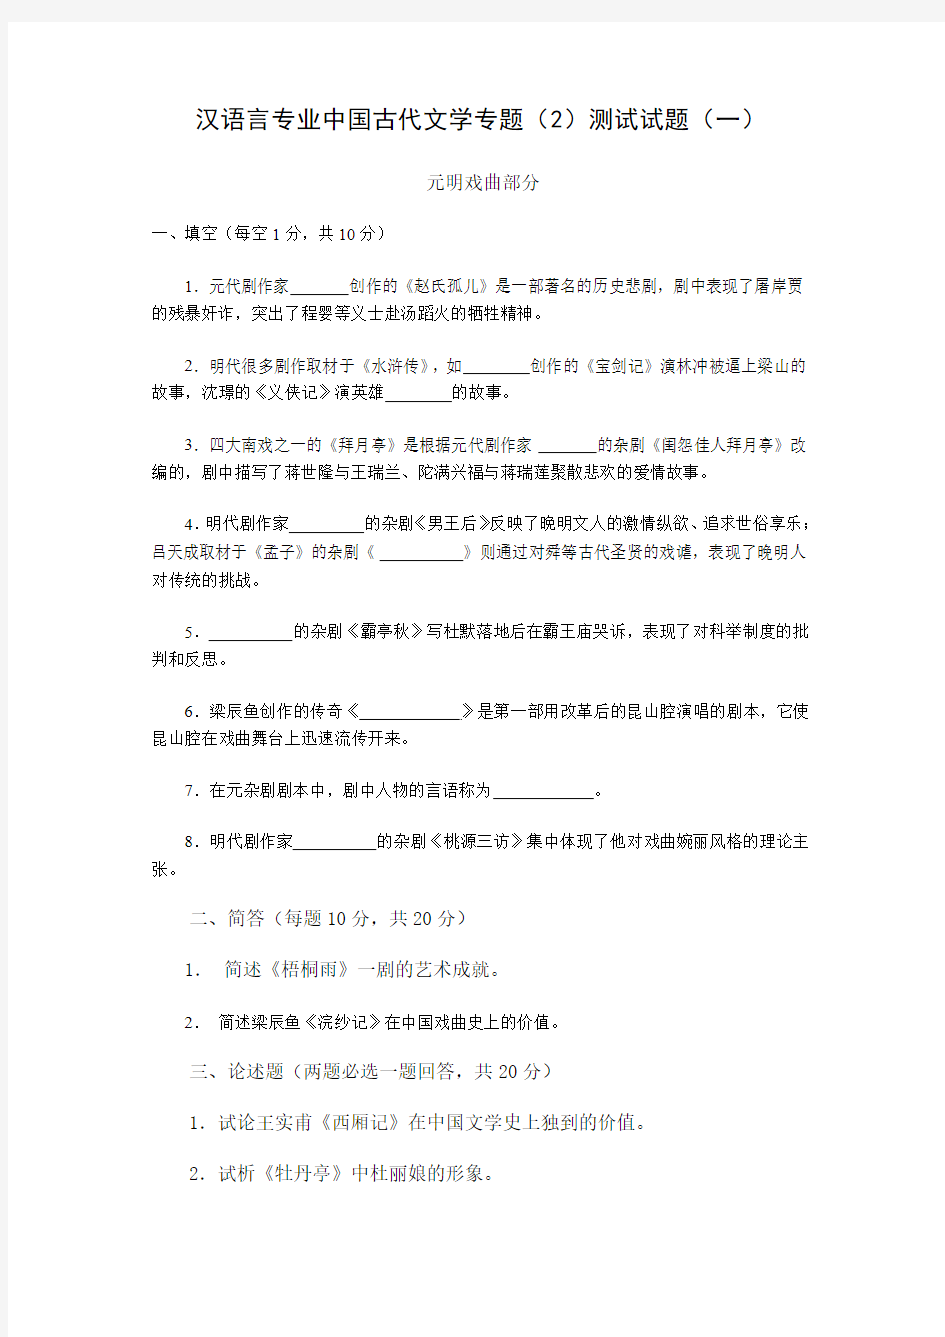 汉语言专业中国古代文学专题(2)测试试题(一)